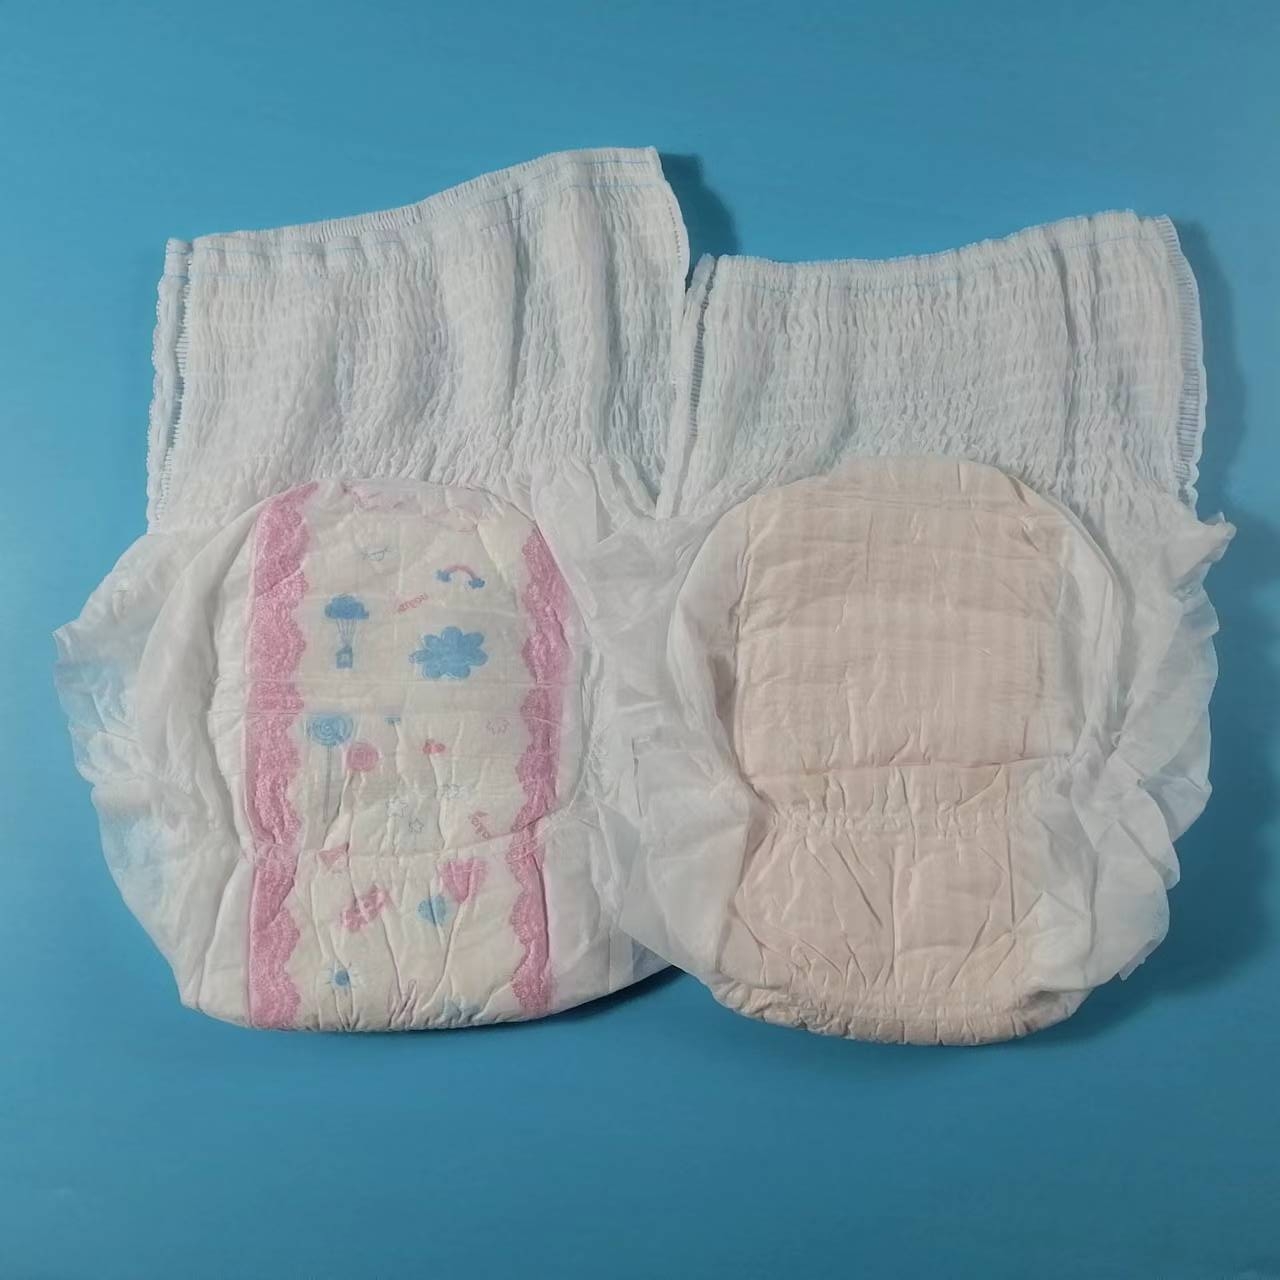 Wysokiej jakości podpaska higieniczna typu majtki Beztroskie kobiece spodnie menstruacyjne Super miękkie jednorazowe bawełniane majtki higieniczne